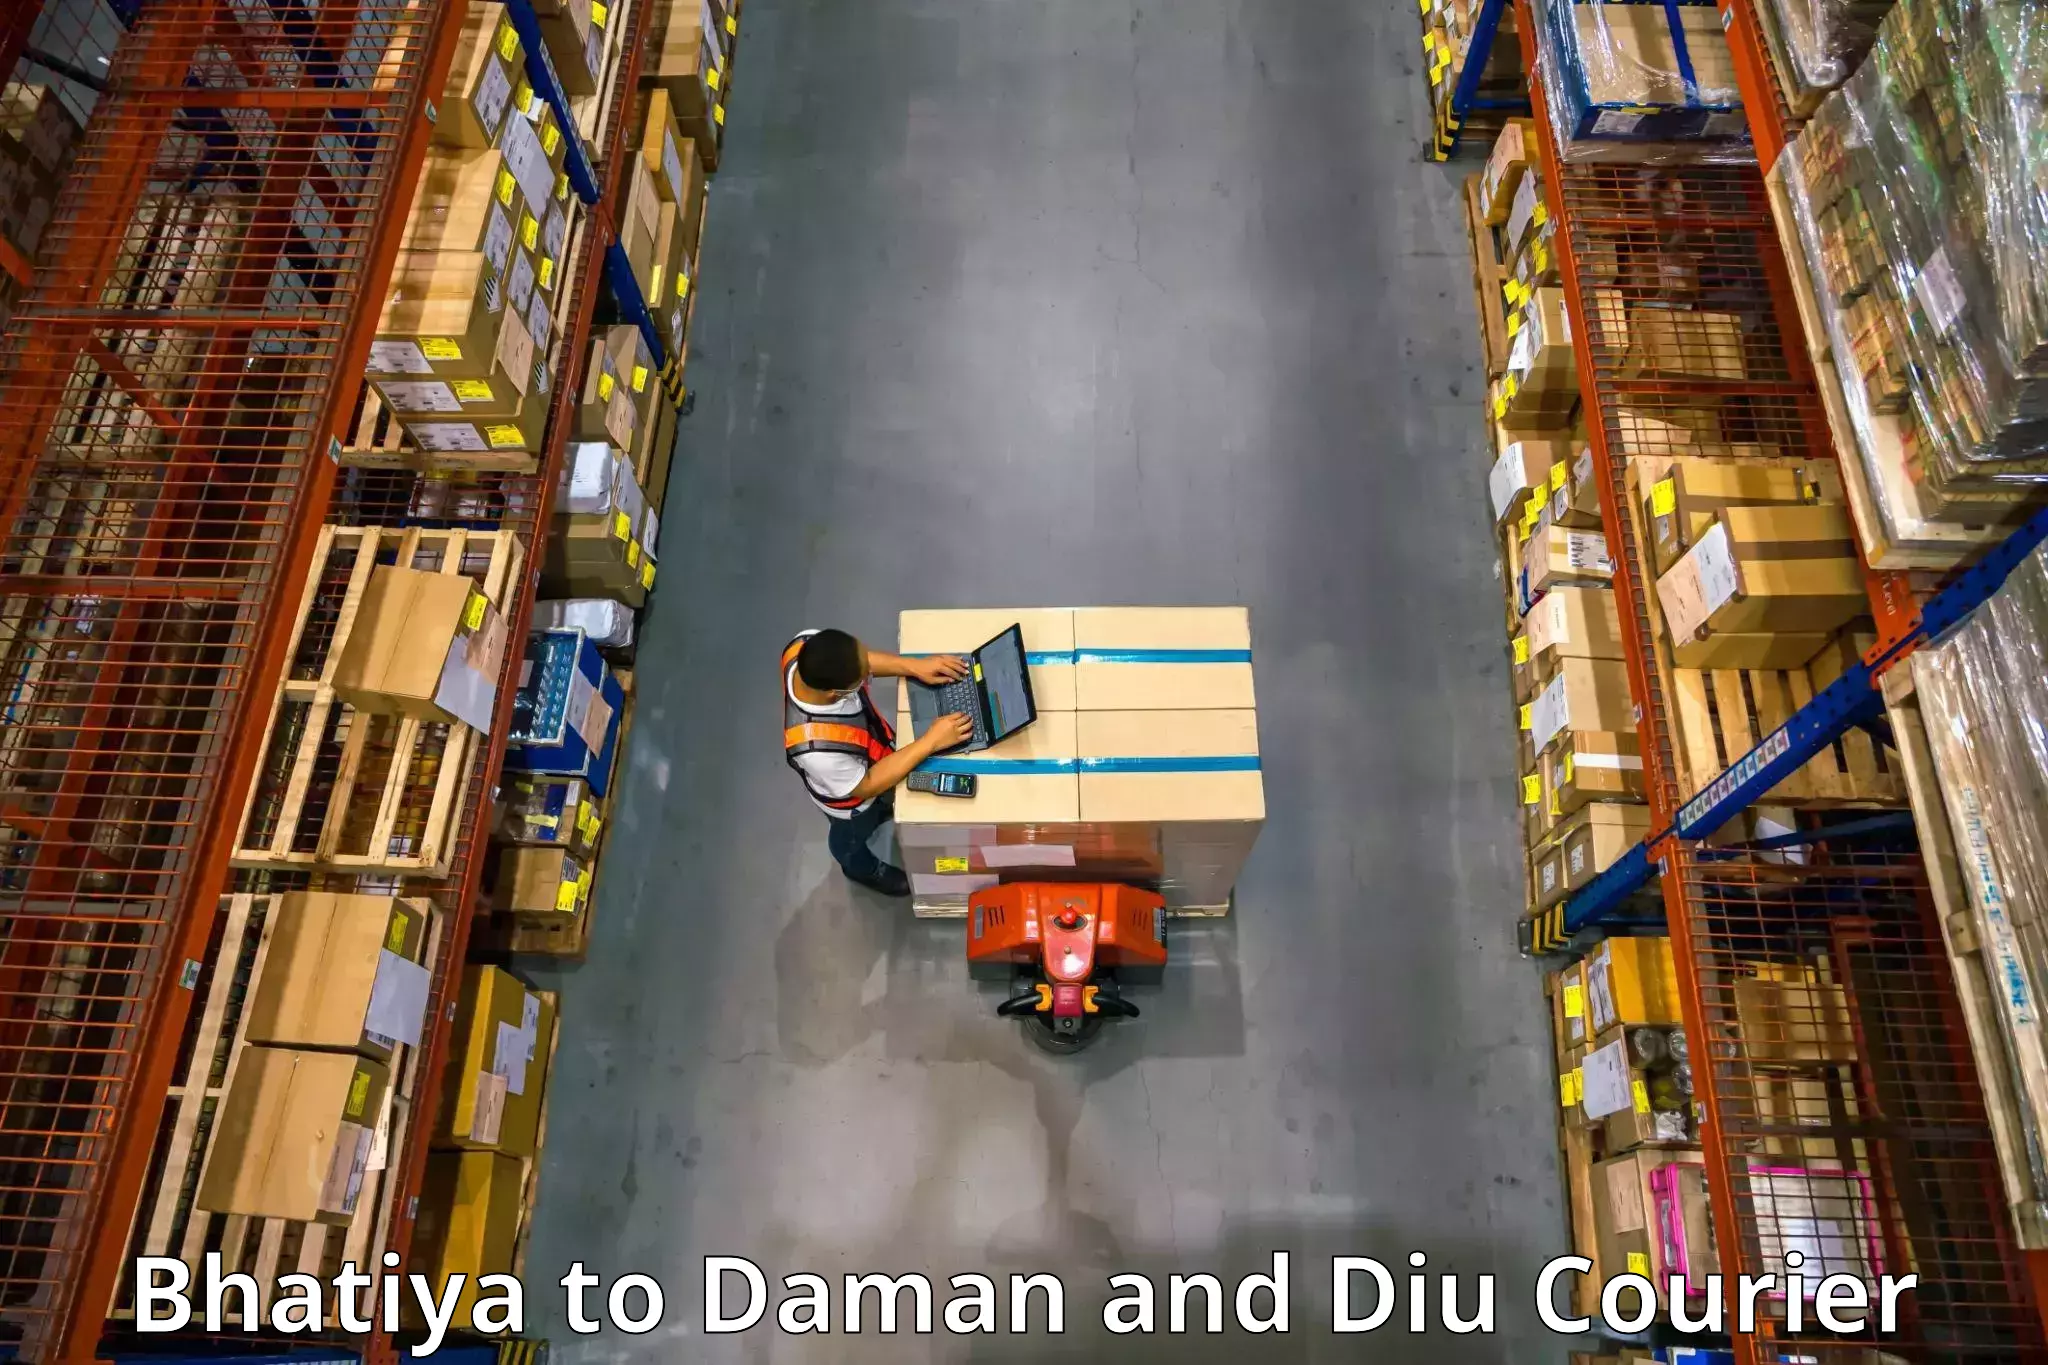 Furniture transport and storage Bhatiya to Daman and Diu